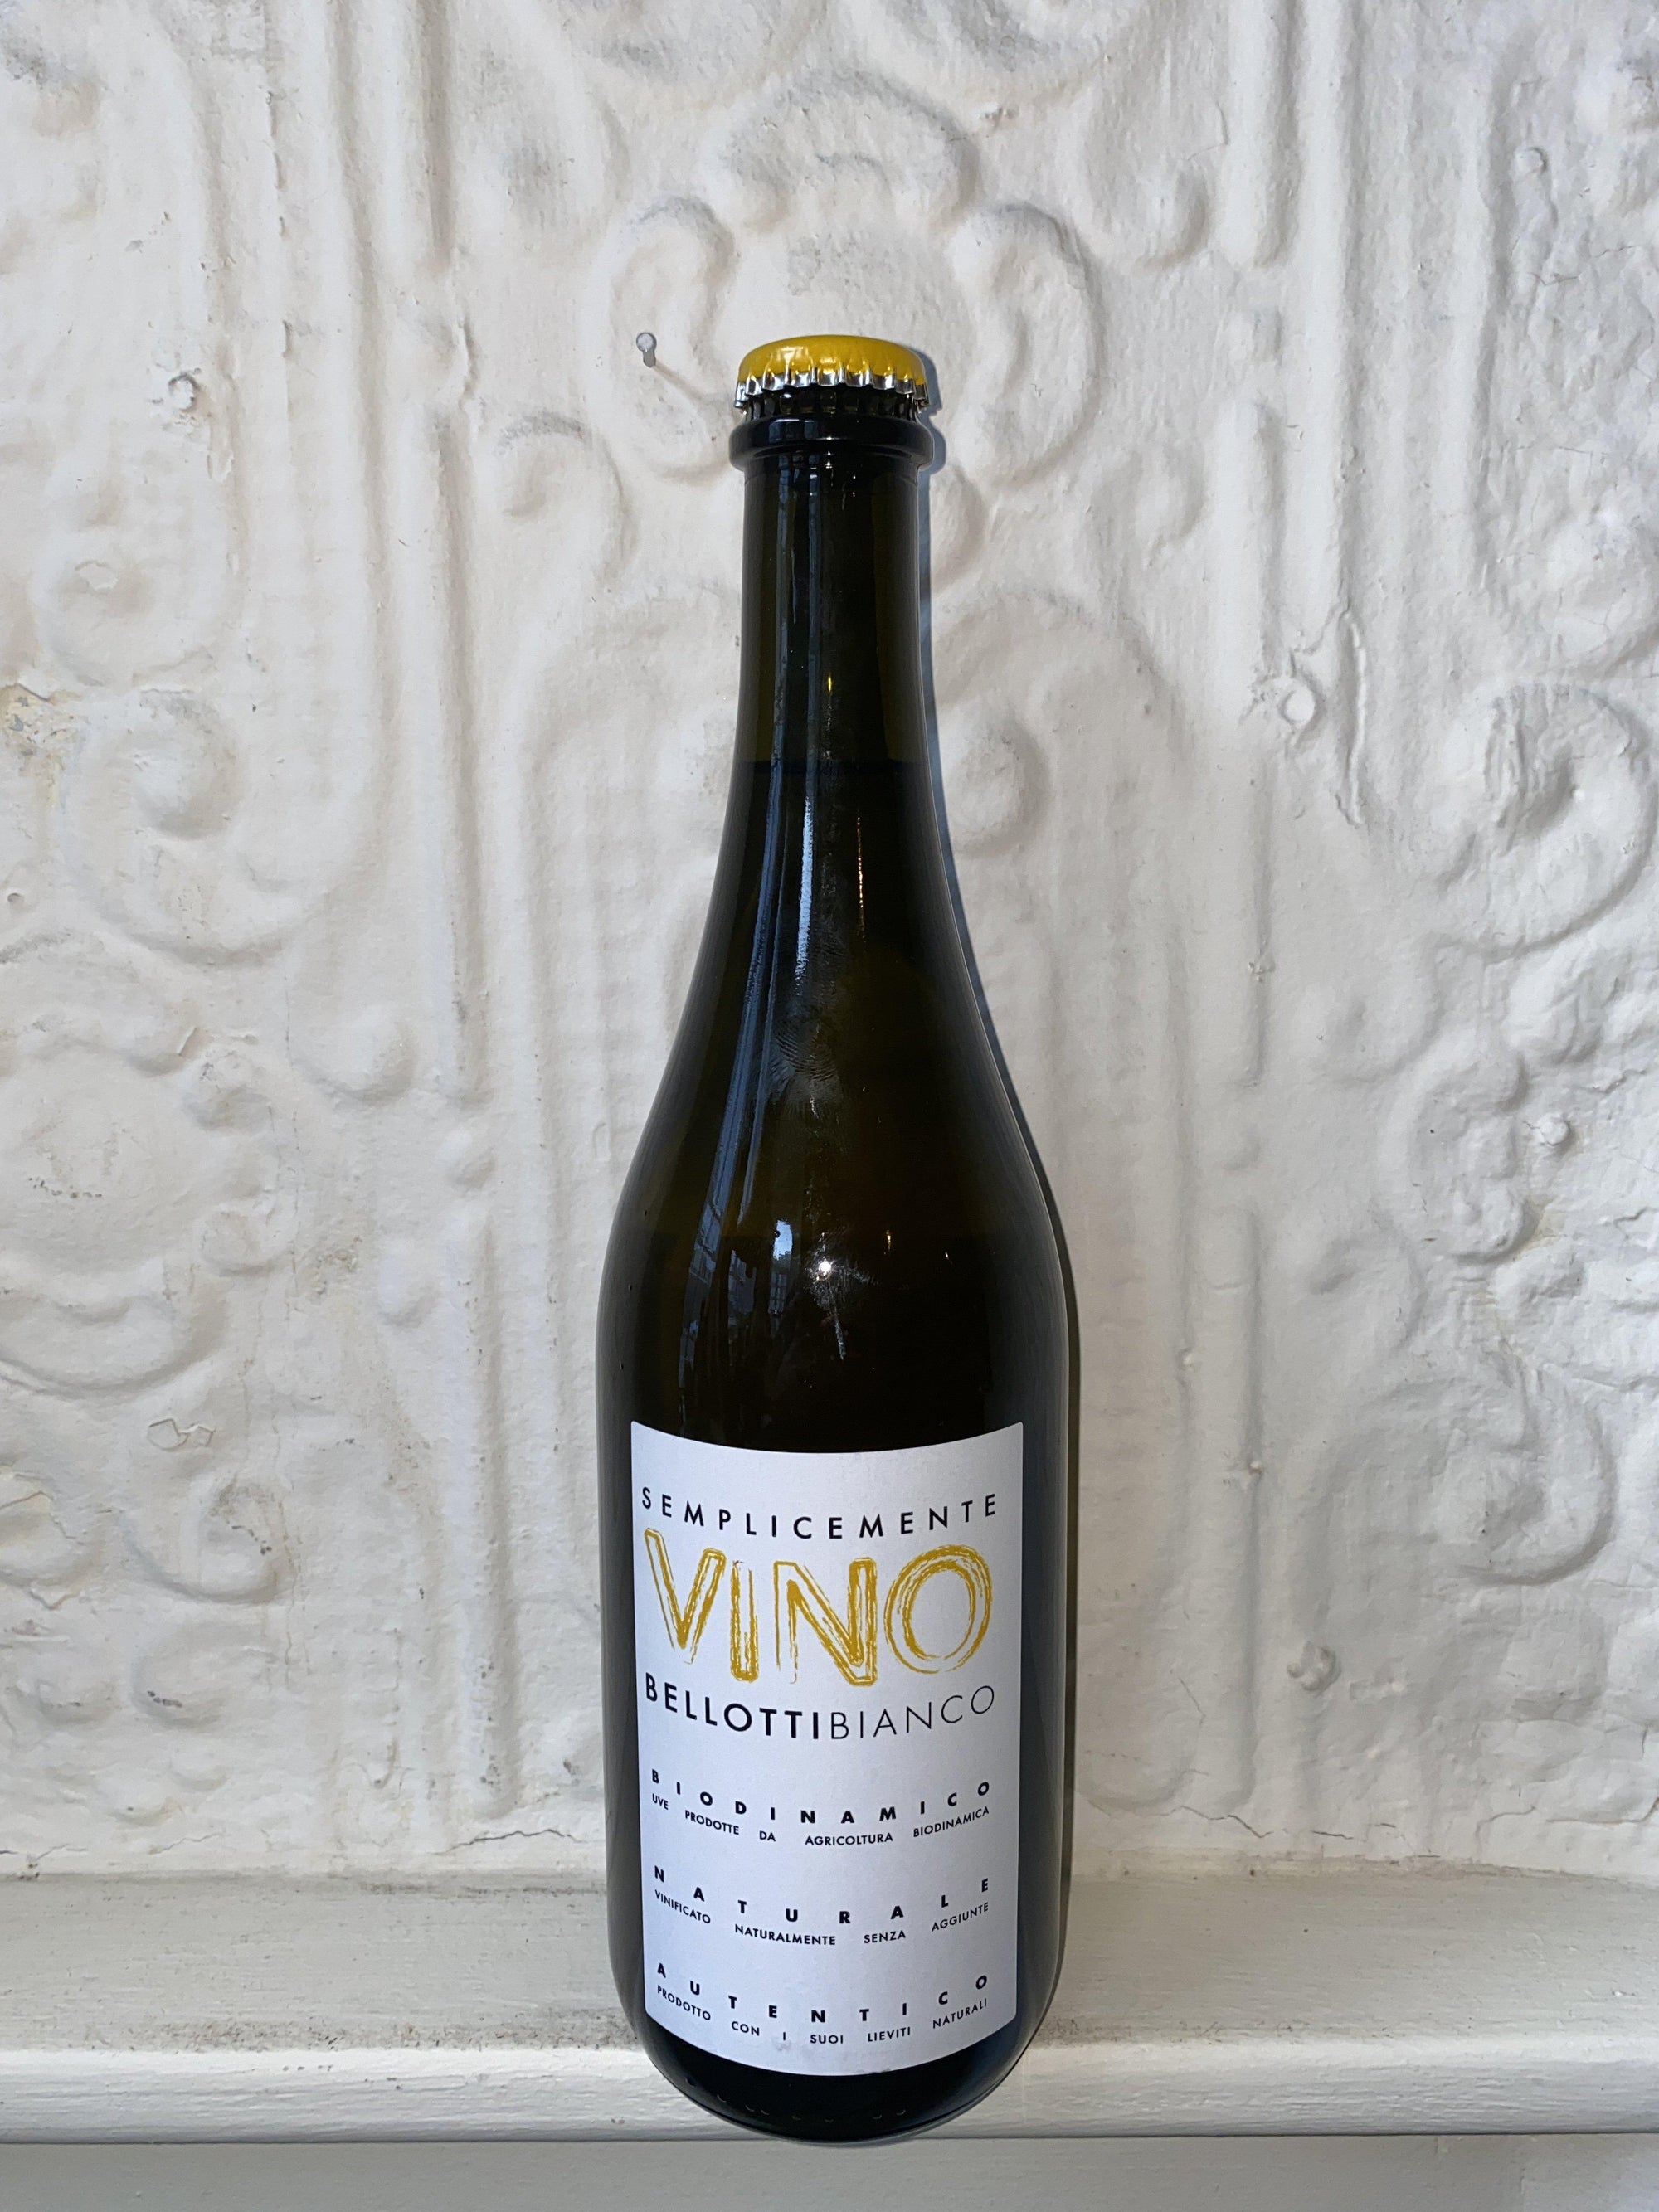 Semplicemente Vino Bellotti Bianco, Cascina degli Ulivi 2019 (Piedmont, Italy)-Wine-Bibber & Bell